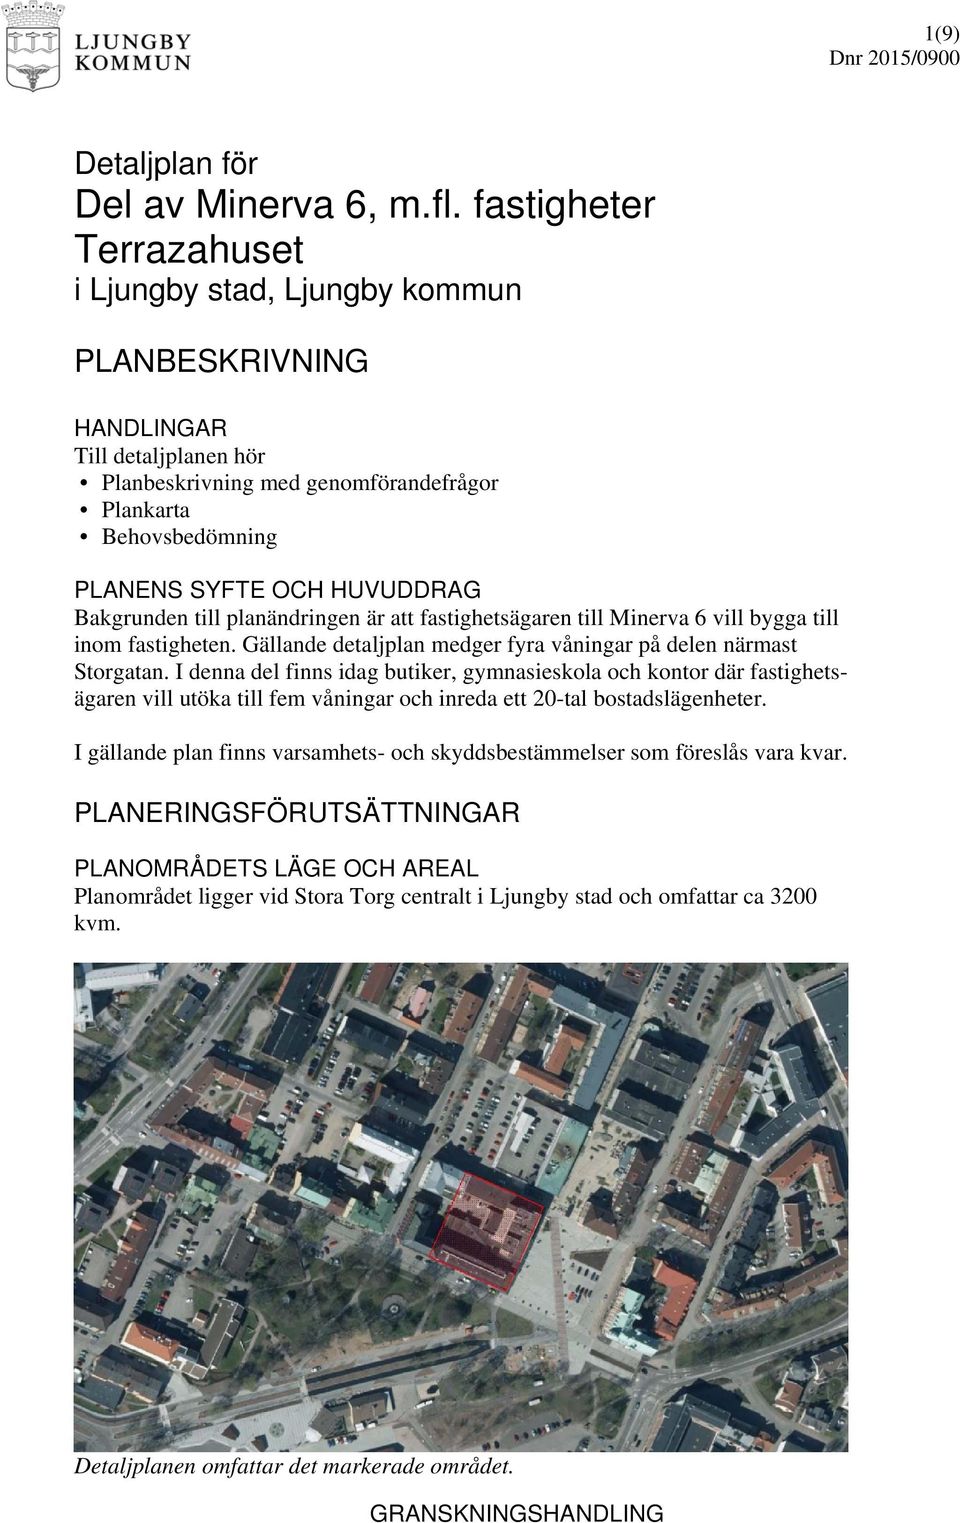 Bakgrunden till planändringen är att fastighetsägaren till Minerva 6 vill bygga till inom fastigheten. Gällande detaljplan medger fyra våningar på delen närmast Storgatan.